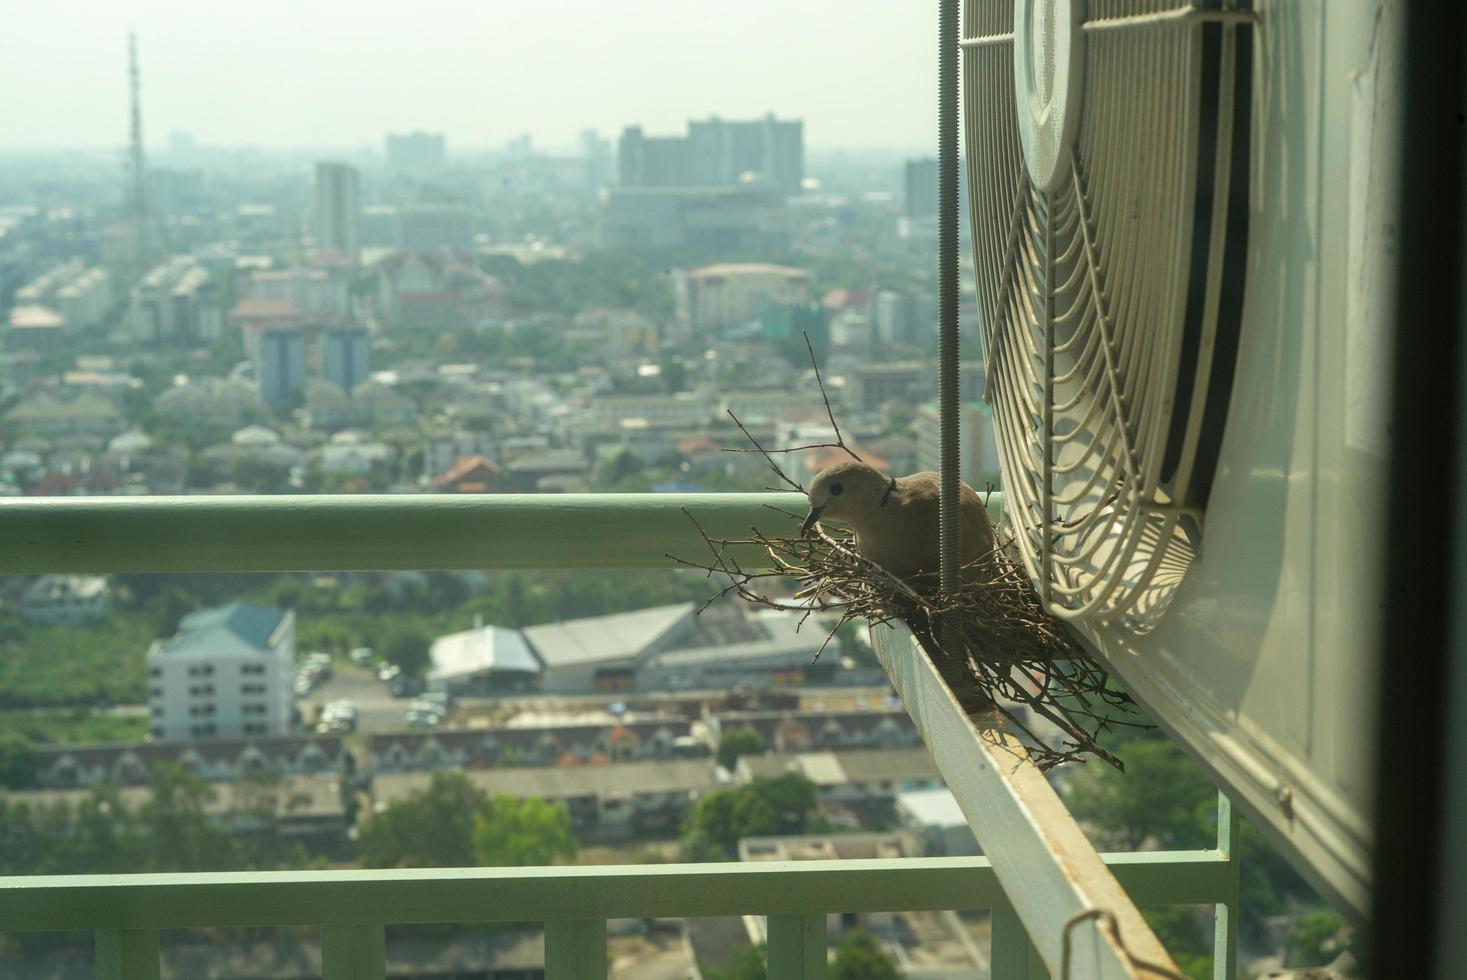 närbild fågel i ett bo på stålbur av luftkonditioneringsapparater på terrassen i hög bostadsrätt med suddig stadsbild bakgrund i solsken morgon foto